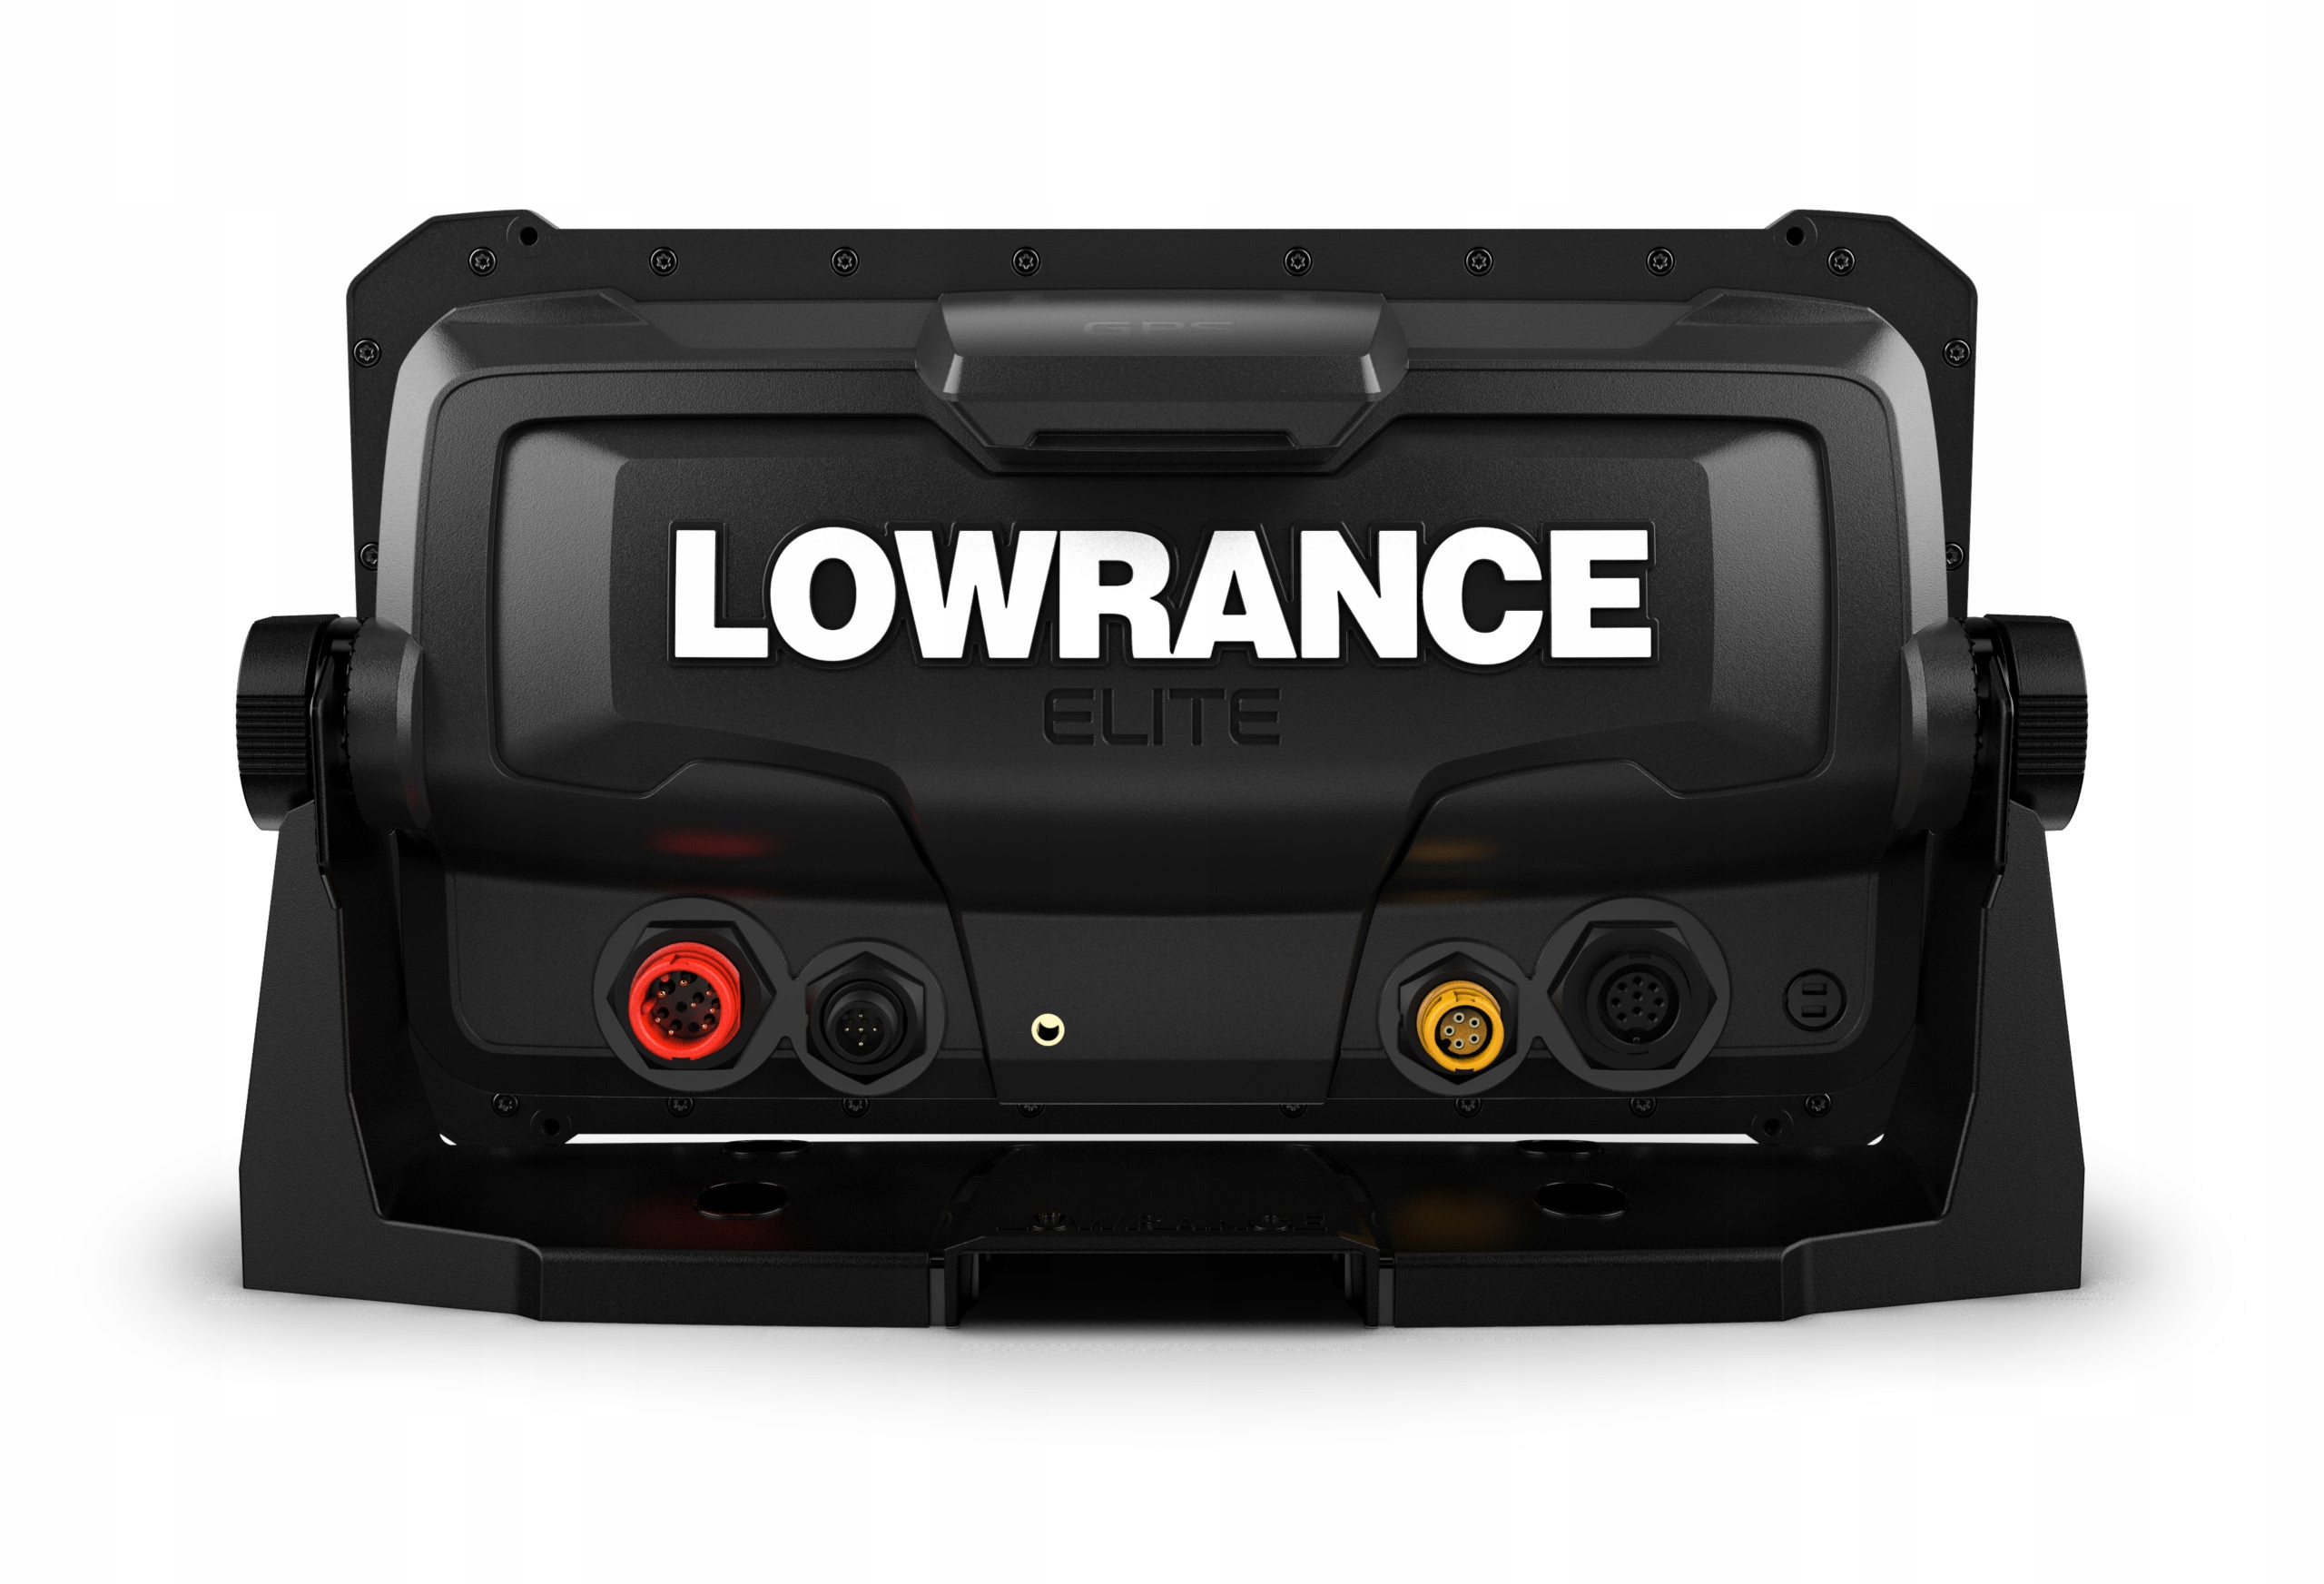 Лоуренс элит 9 fs. Lowrance Elite 9 FS. Lowrance Elite FS 9 С датчиком Active Imaging 3-in-1. Lowrance Elite 7 FS. Картплоттер Lowrance Elite FS 9 Active Imaging 3-1 Transducer (Row).